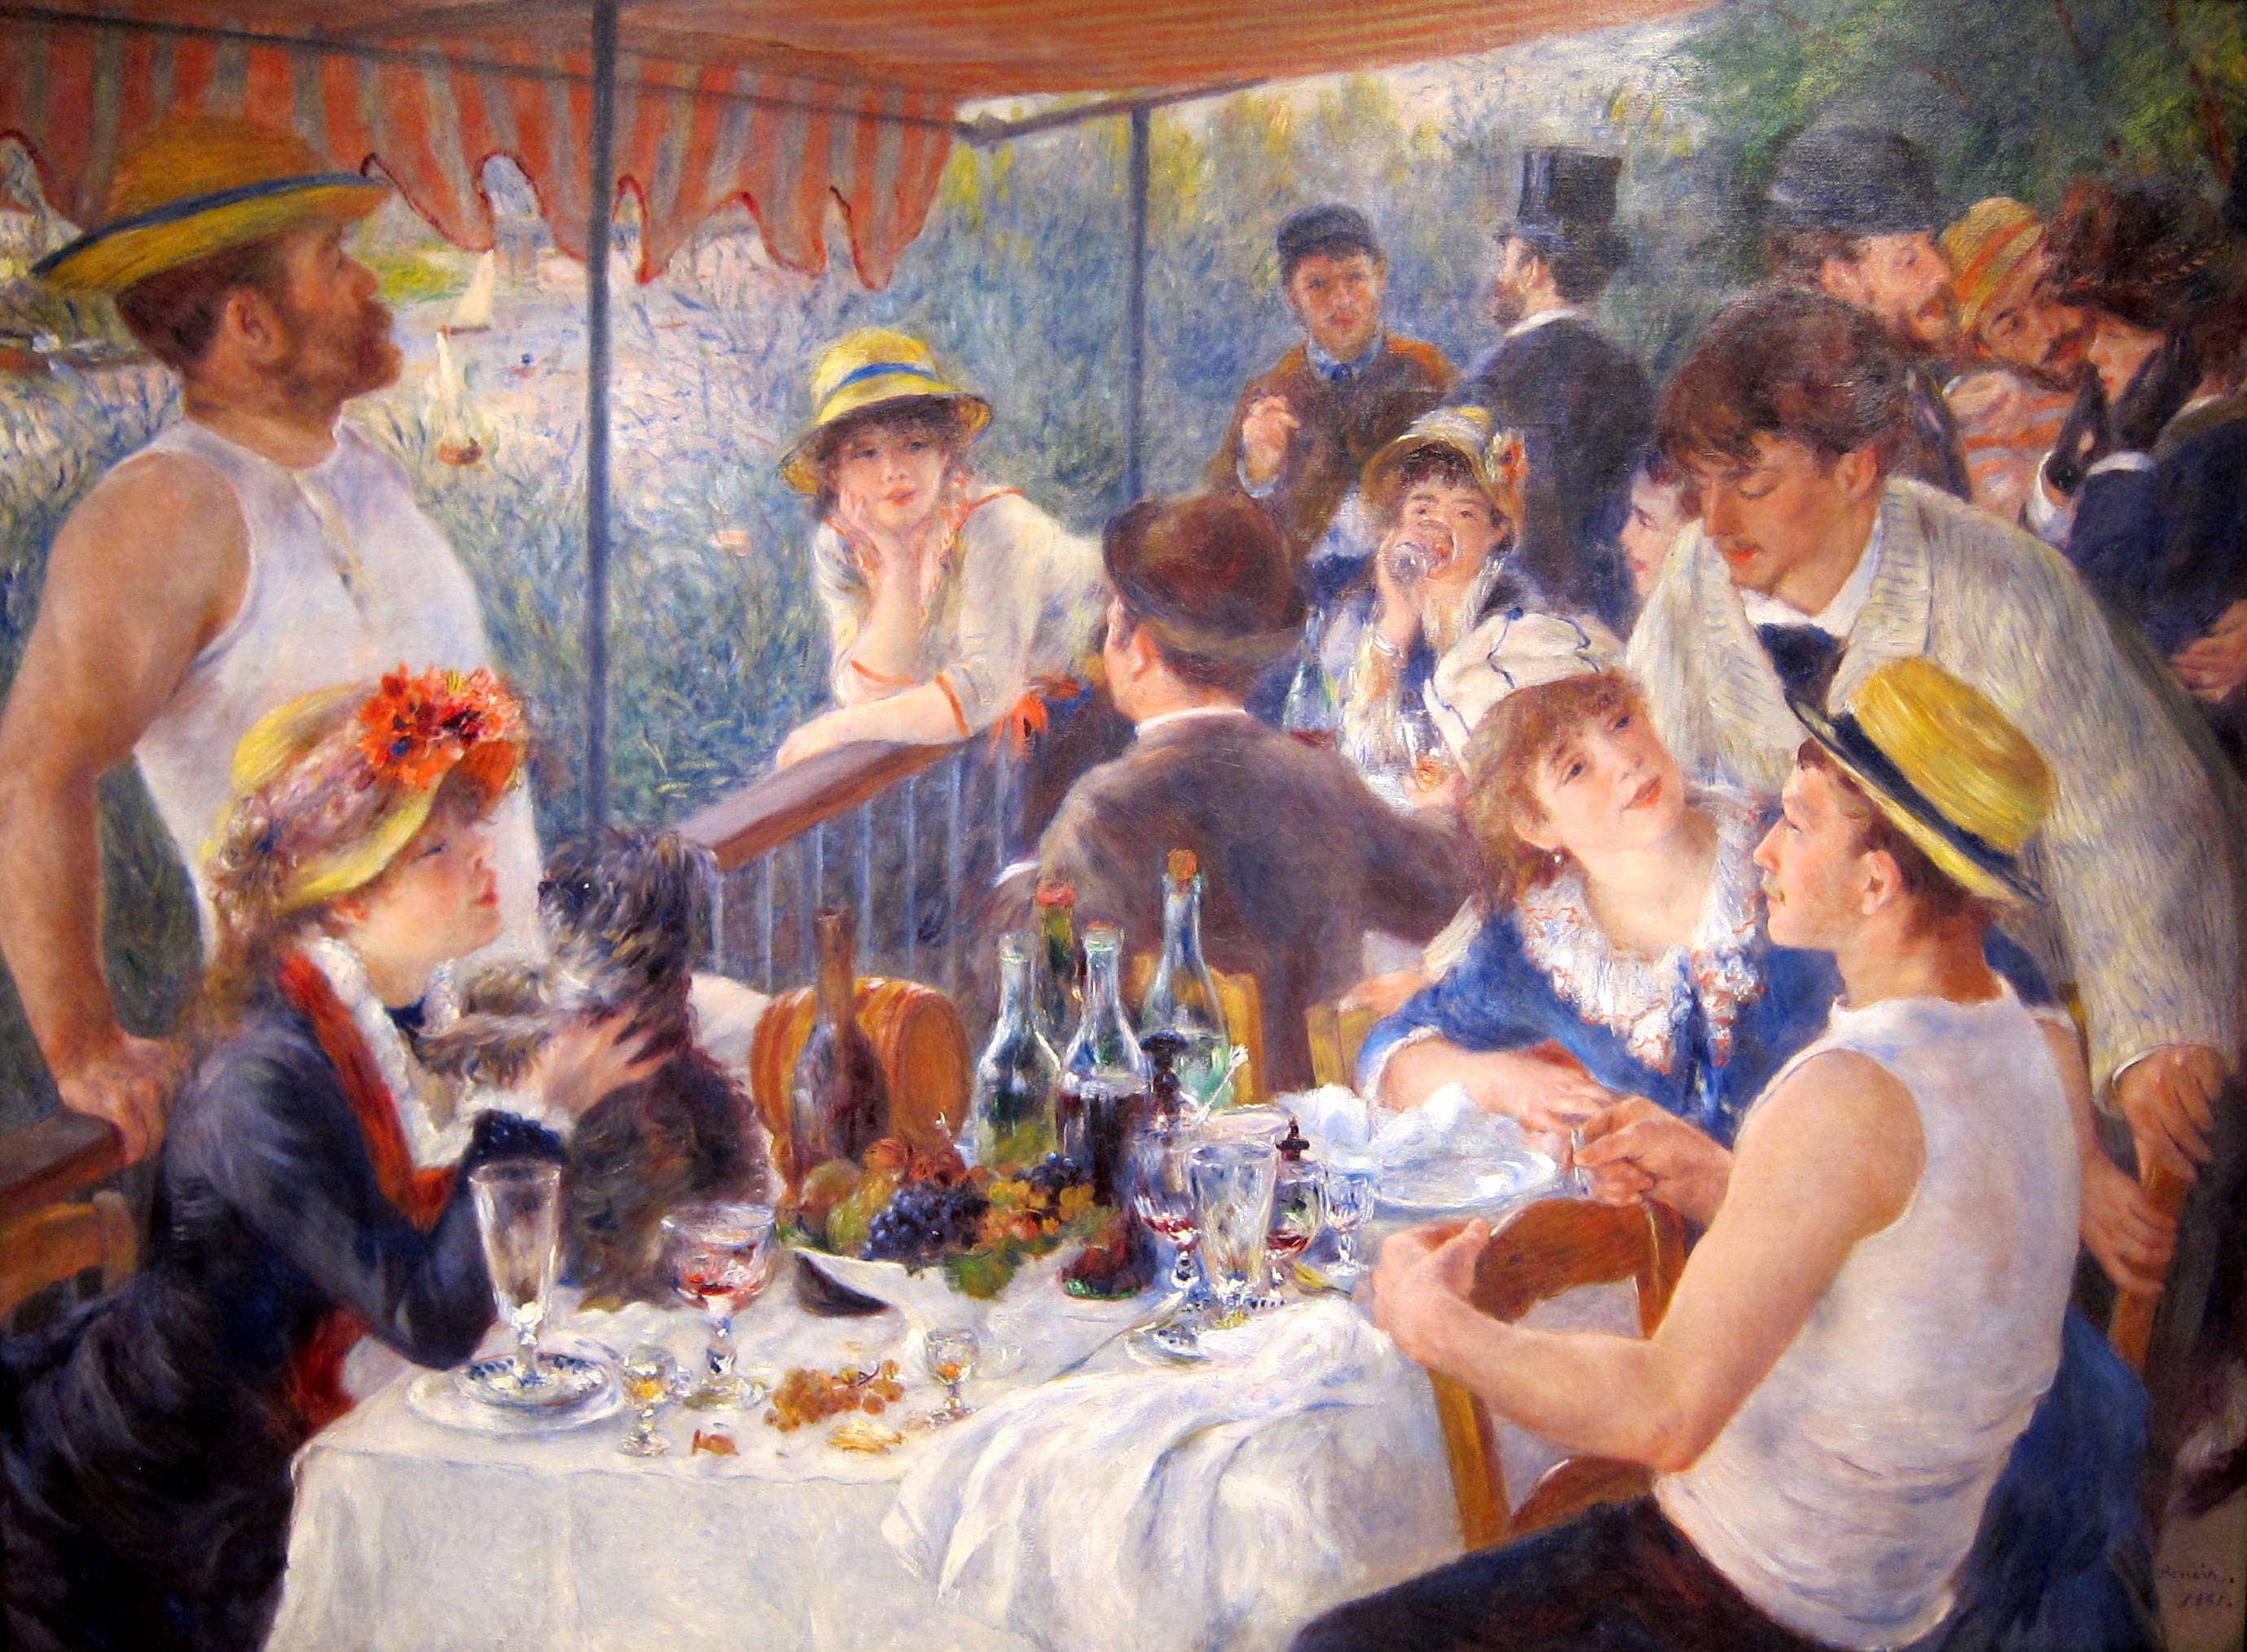 Le Déjeuner des canotiers by Pierre-Auguste Renoir - 1880 - 129.9 × 172.7 cm 